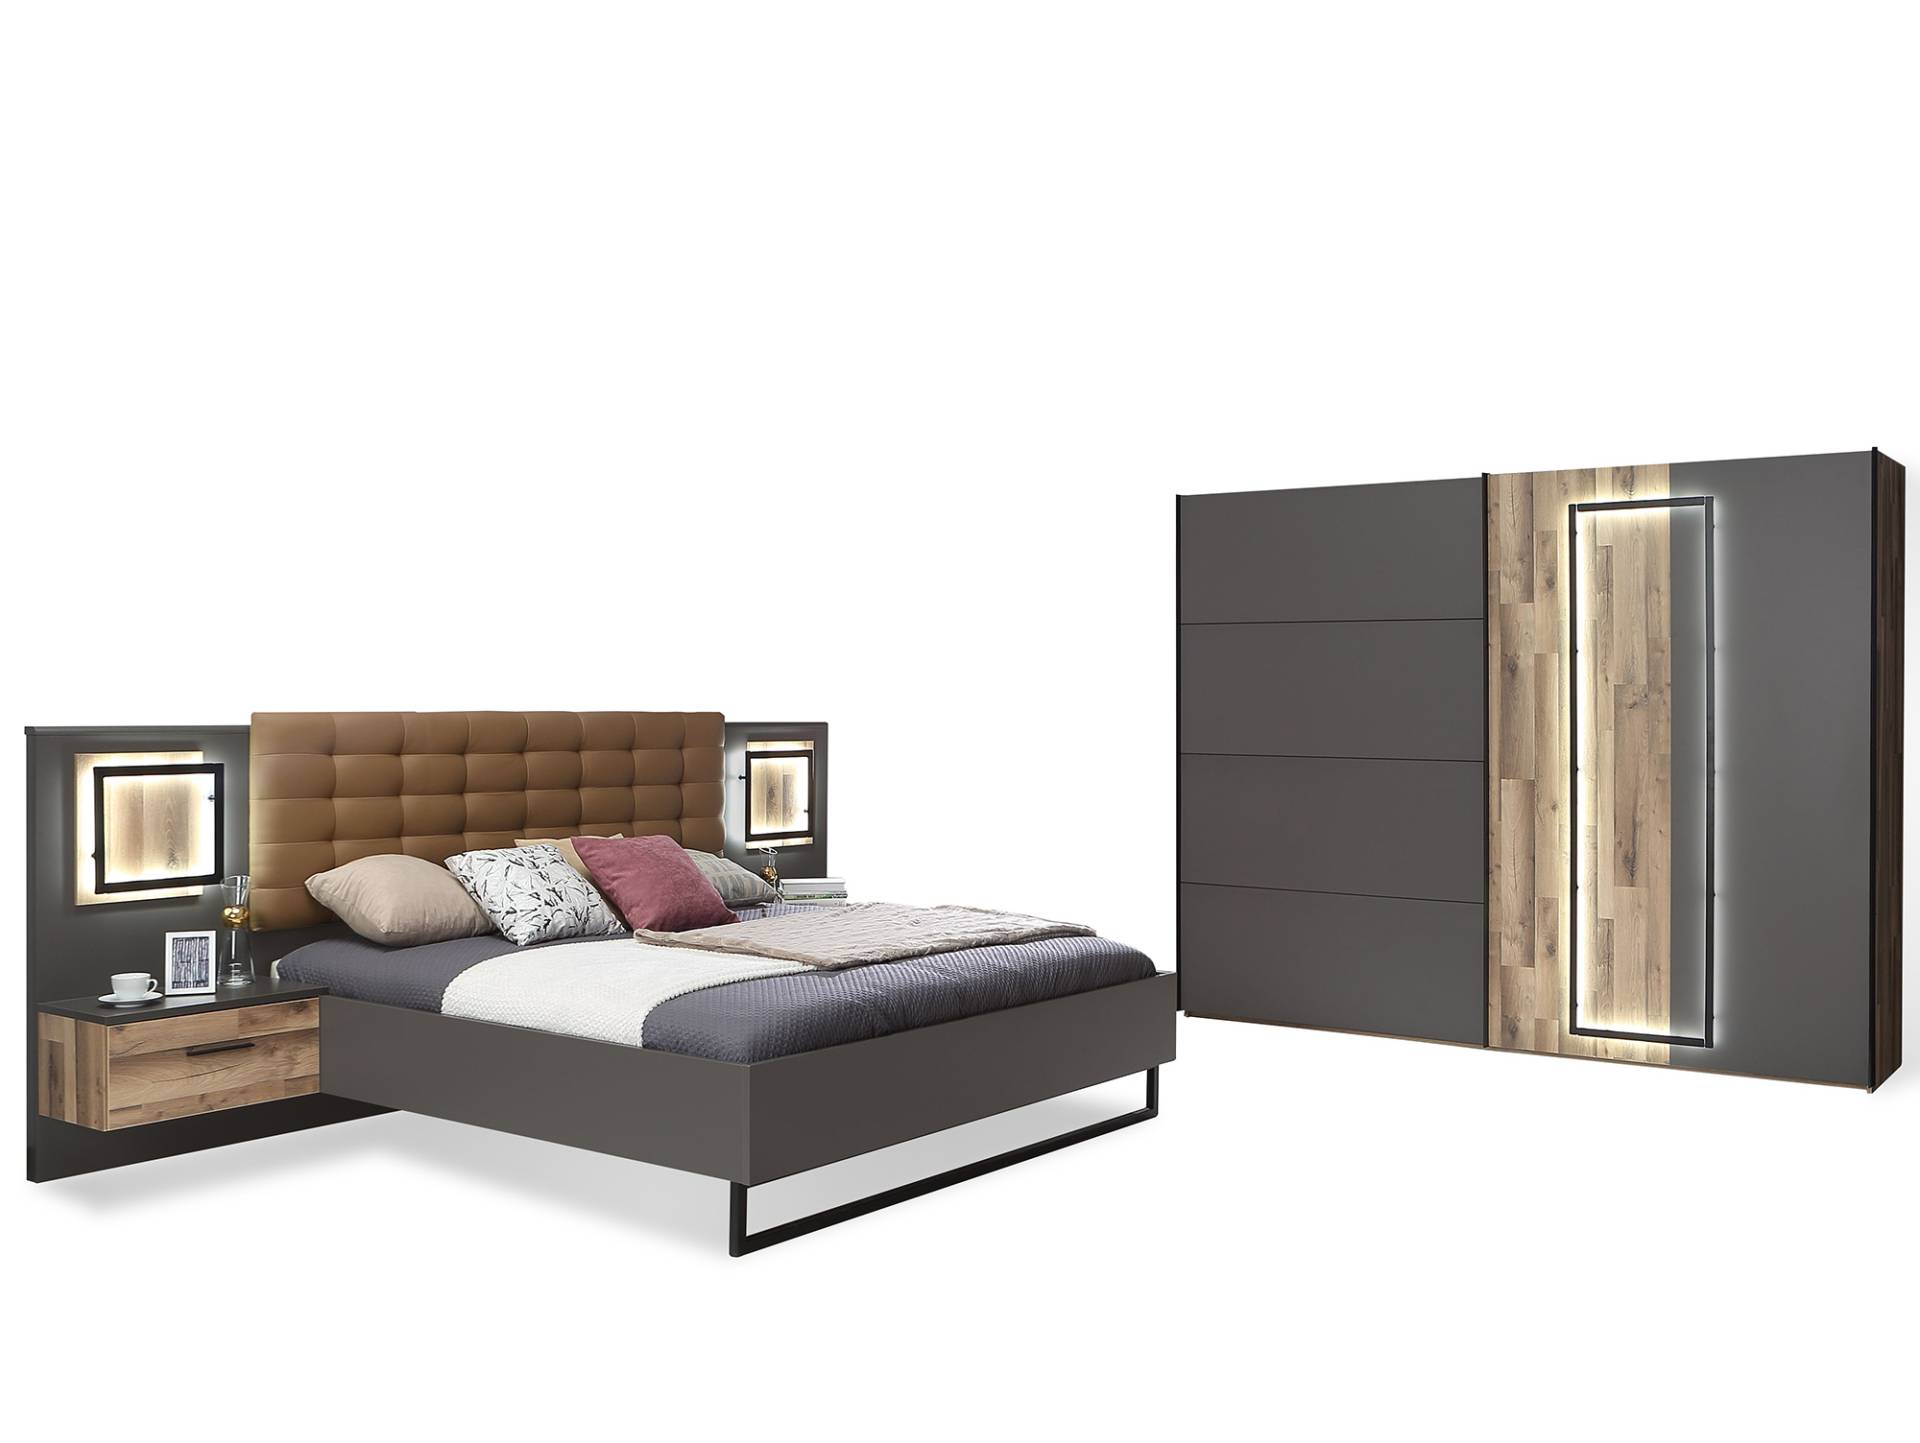 SESTRA Komplett-Schlafzimmer, Material Dekorspanplatte, stabeichefarbig / grau von Möbel-Eins